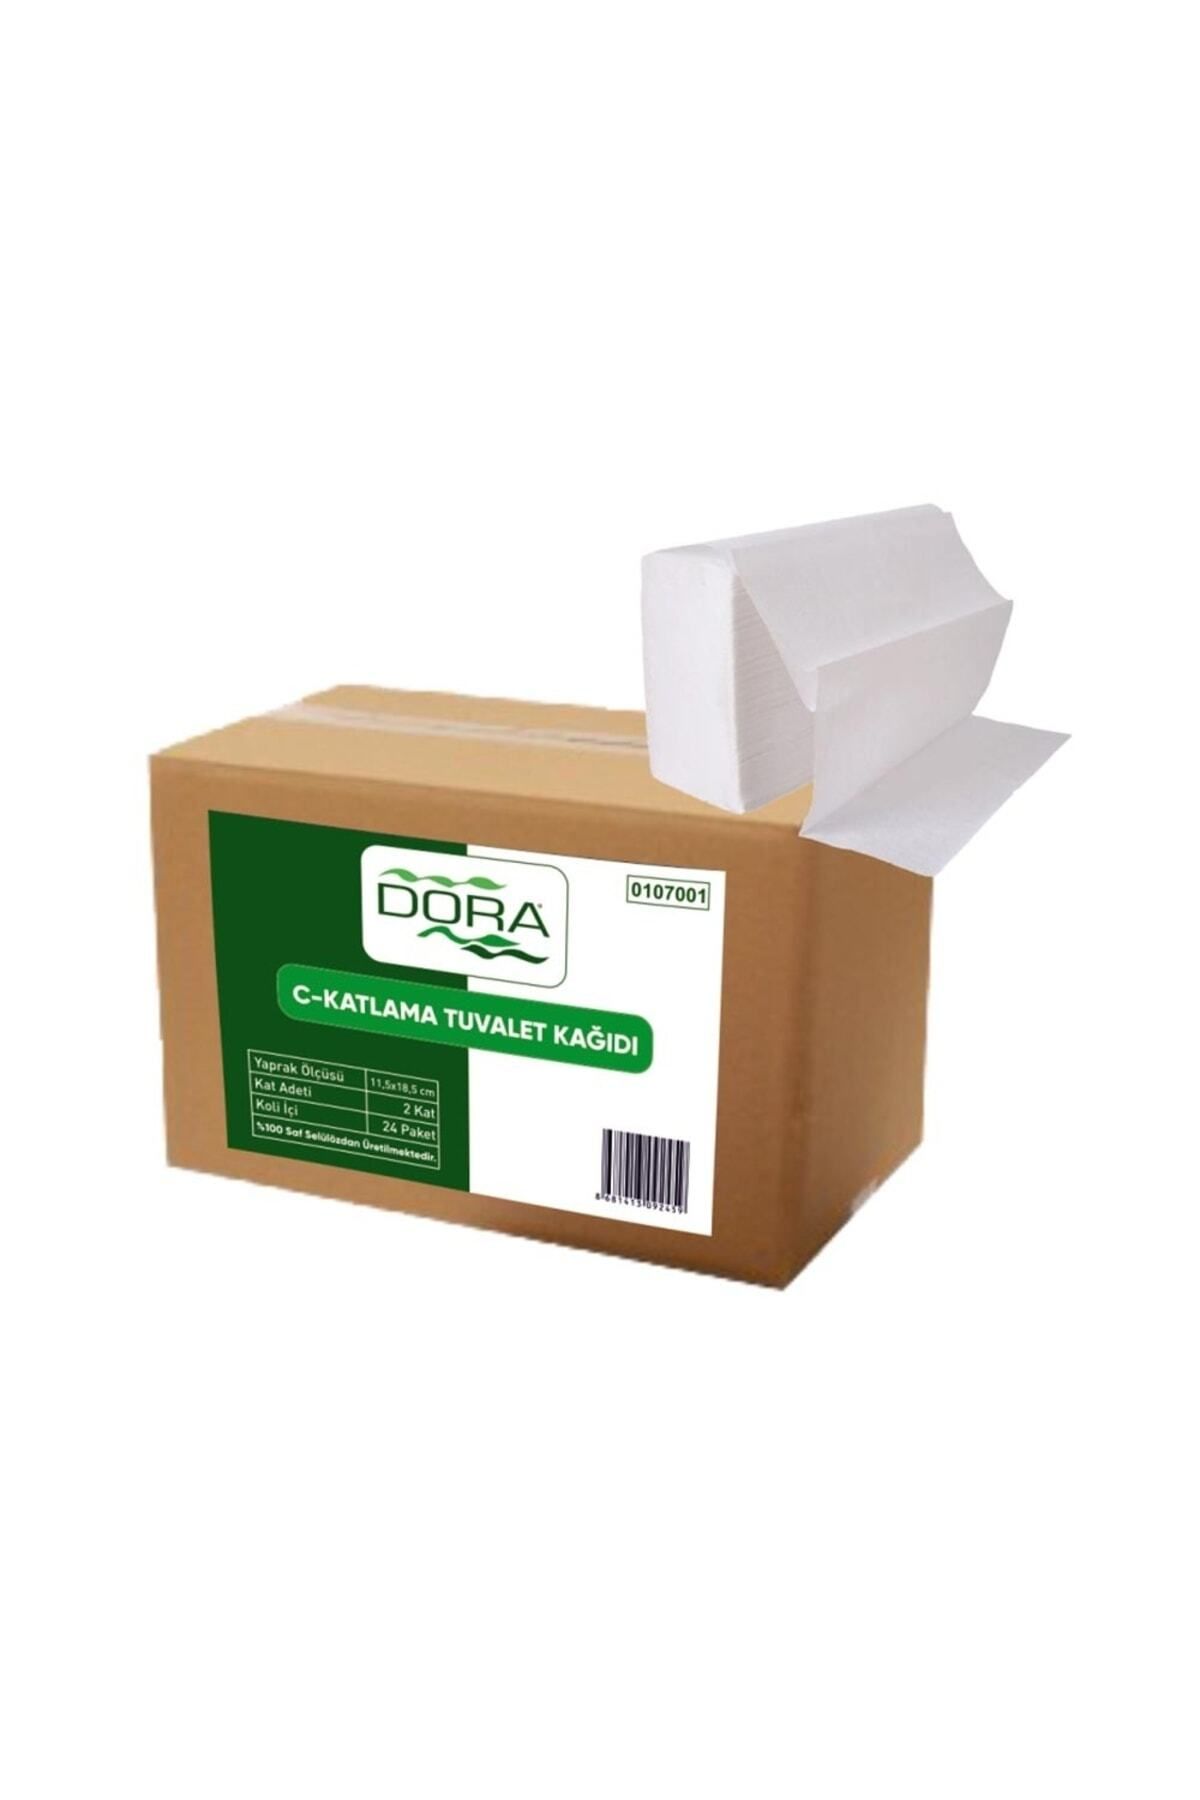 DORA C- Katlama Tuvalet Kağıdı 200lü 48pk.